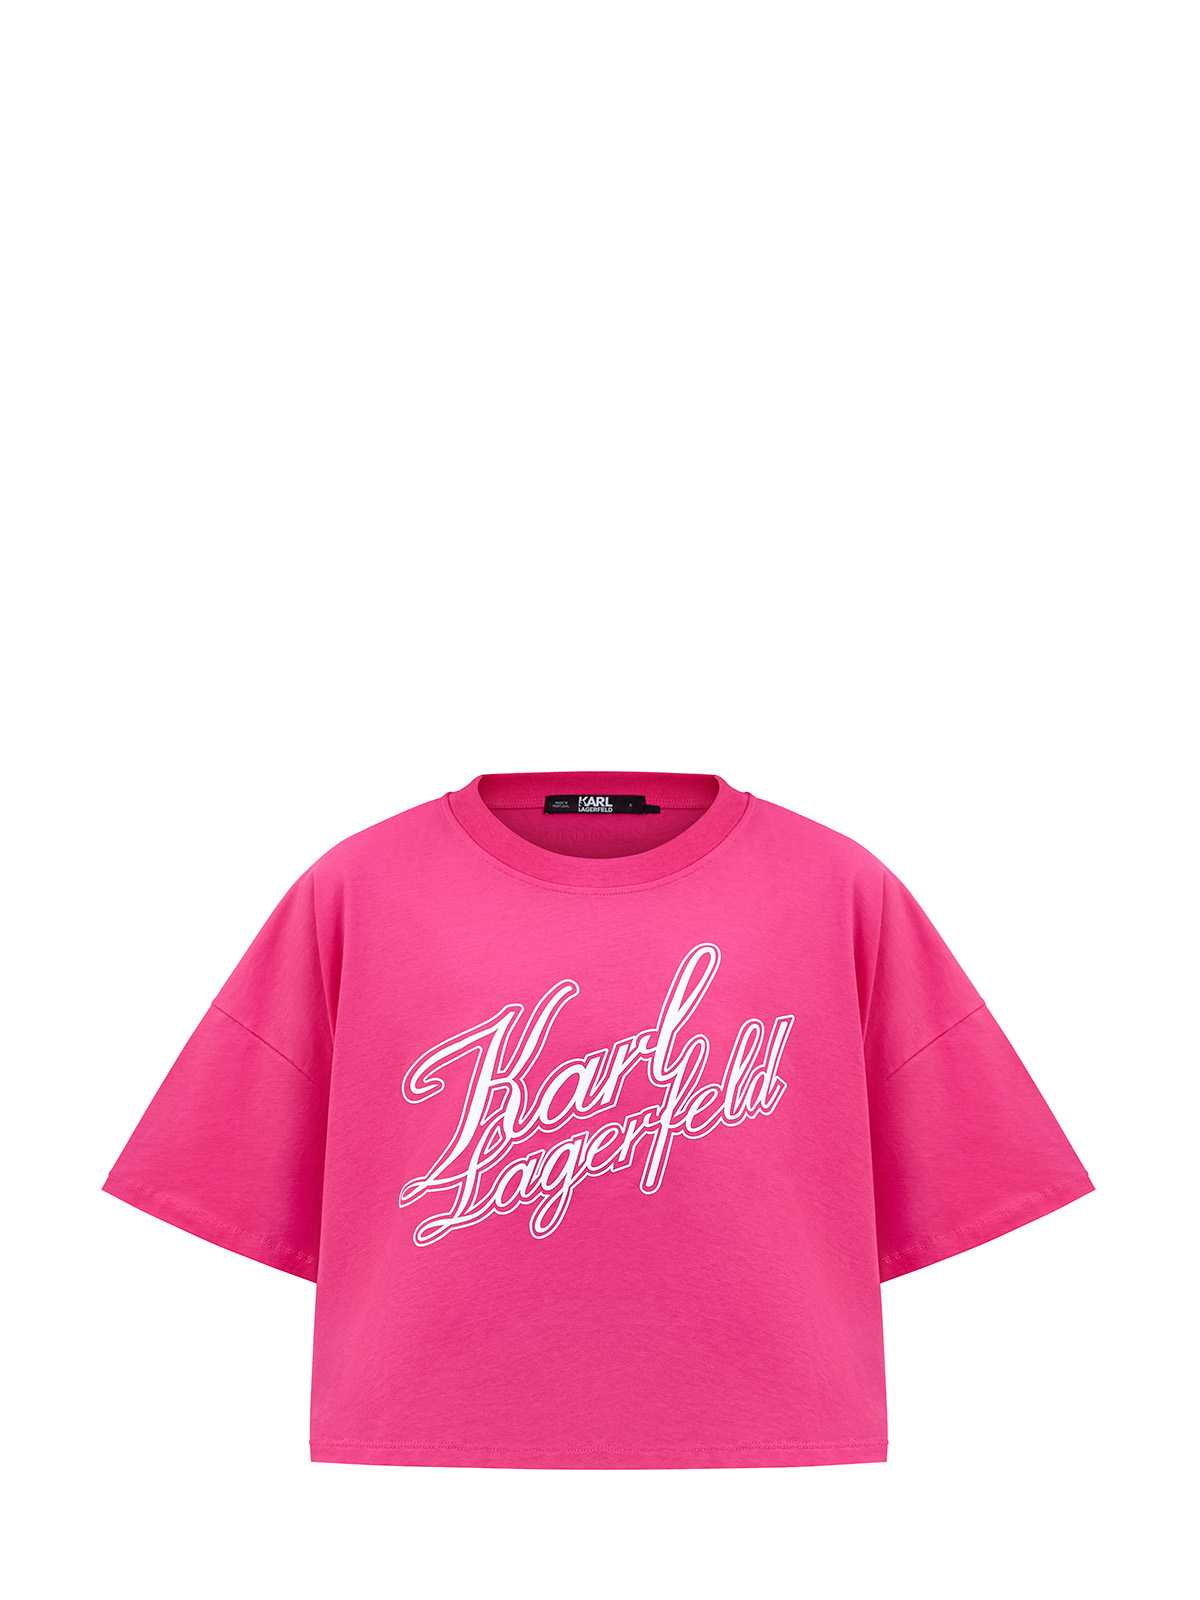 Укороченная футболка из органического хлопка джерси с принтом KARL LAGERFELD, цвет розовый, размер XS;S;M